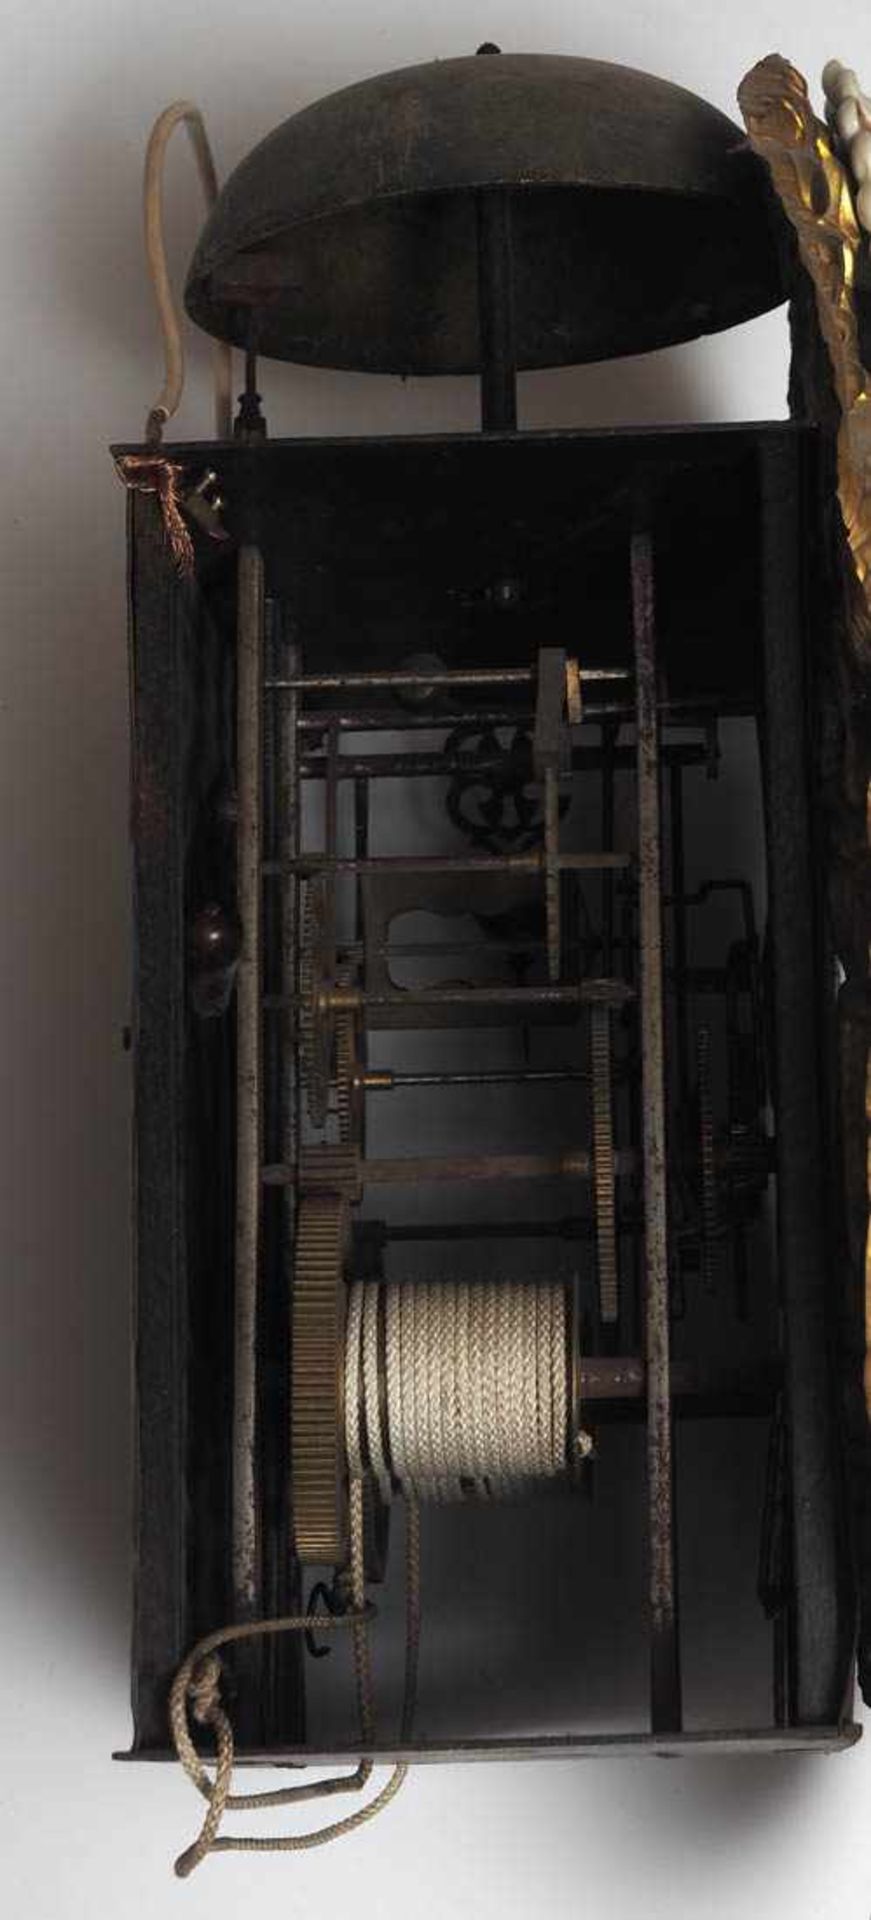 Comtoise-Uhr, 2. Hälfte 19.Jhdt. Metallgespindeltes Werk mit Schlag auf Glocke. Ovale Blende aus - Bild 8 aus 8